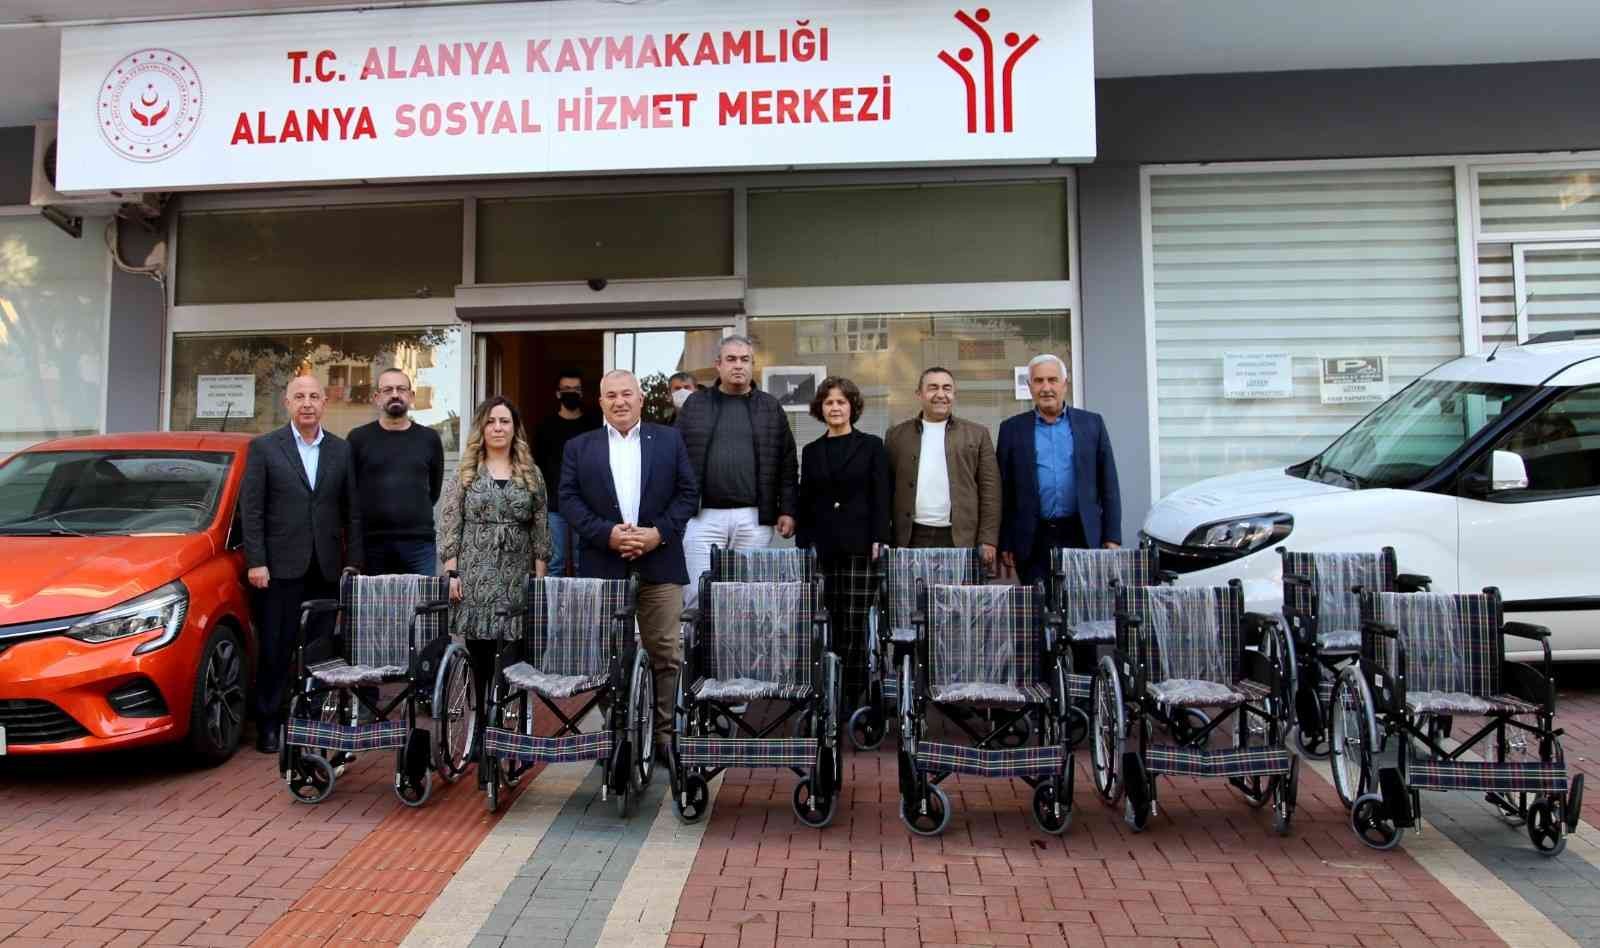 ALTSO Başkanı Şahin’den 10 adet tekerlekli sandalye bağışı